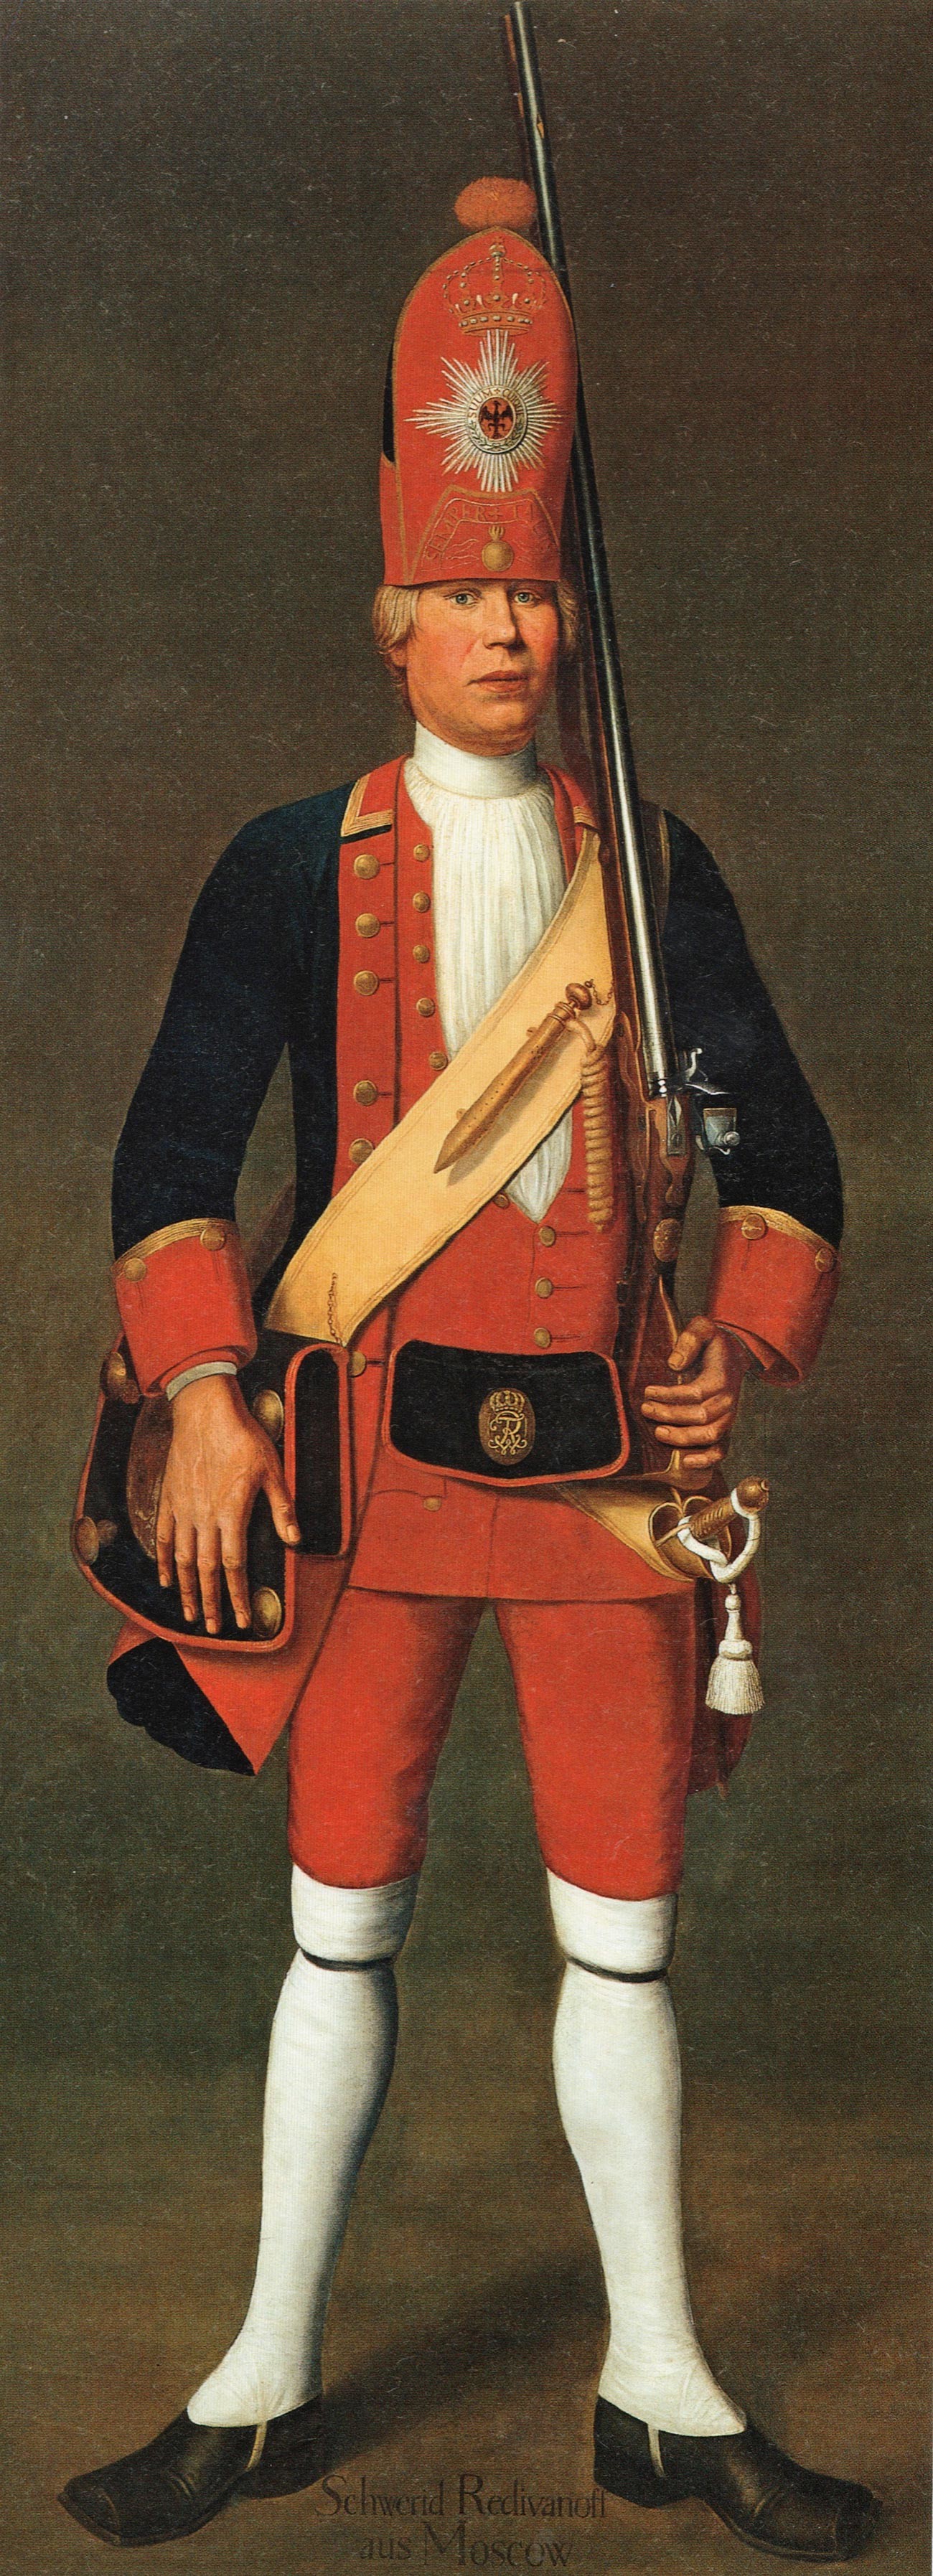 Retrato do soldado da infantaria Svirid Redivanov (Rodionov), de Moscou, doado pelo imperador russo ao rei prussiano em troca da Sala de Âmbar